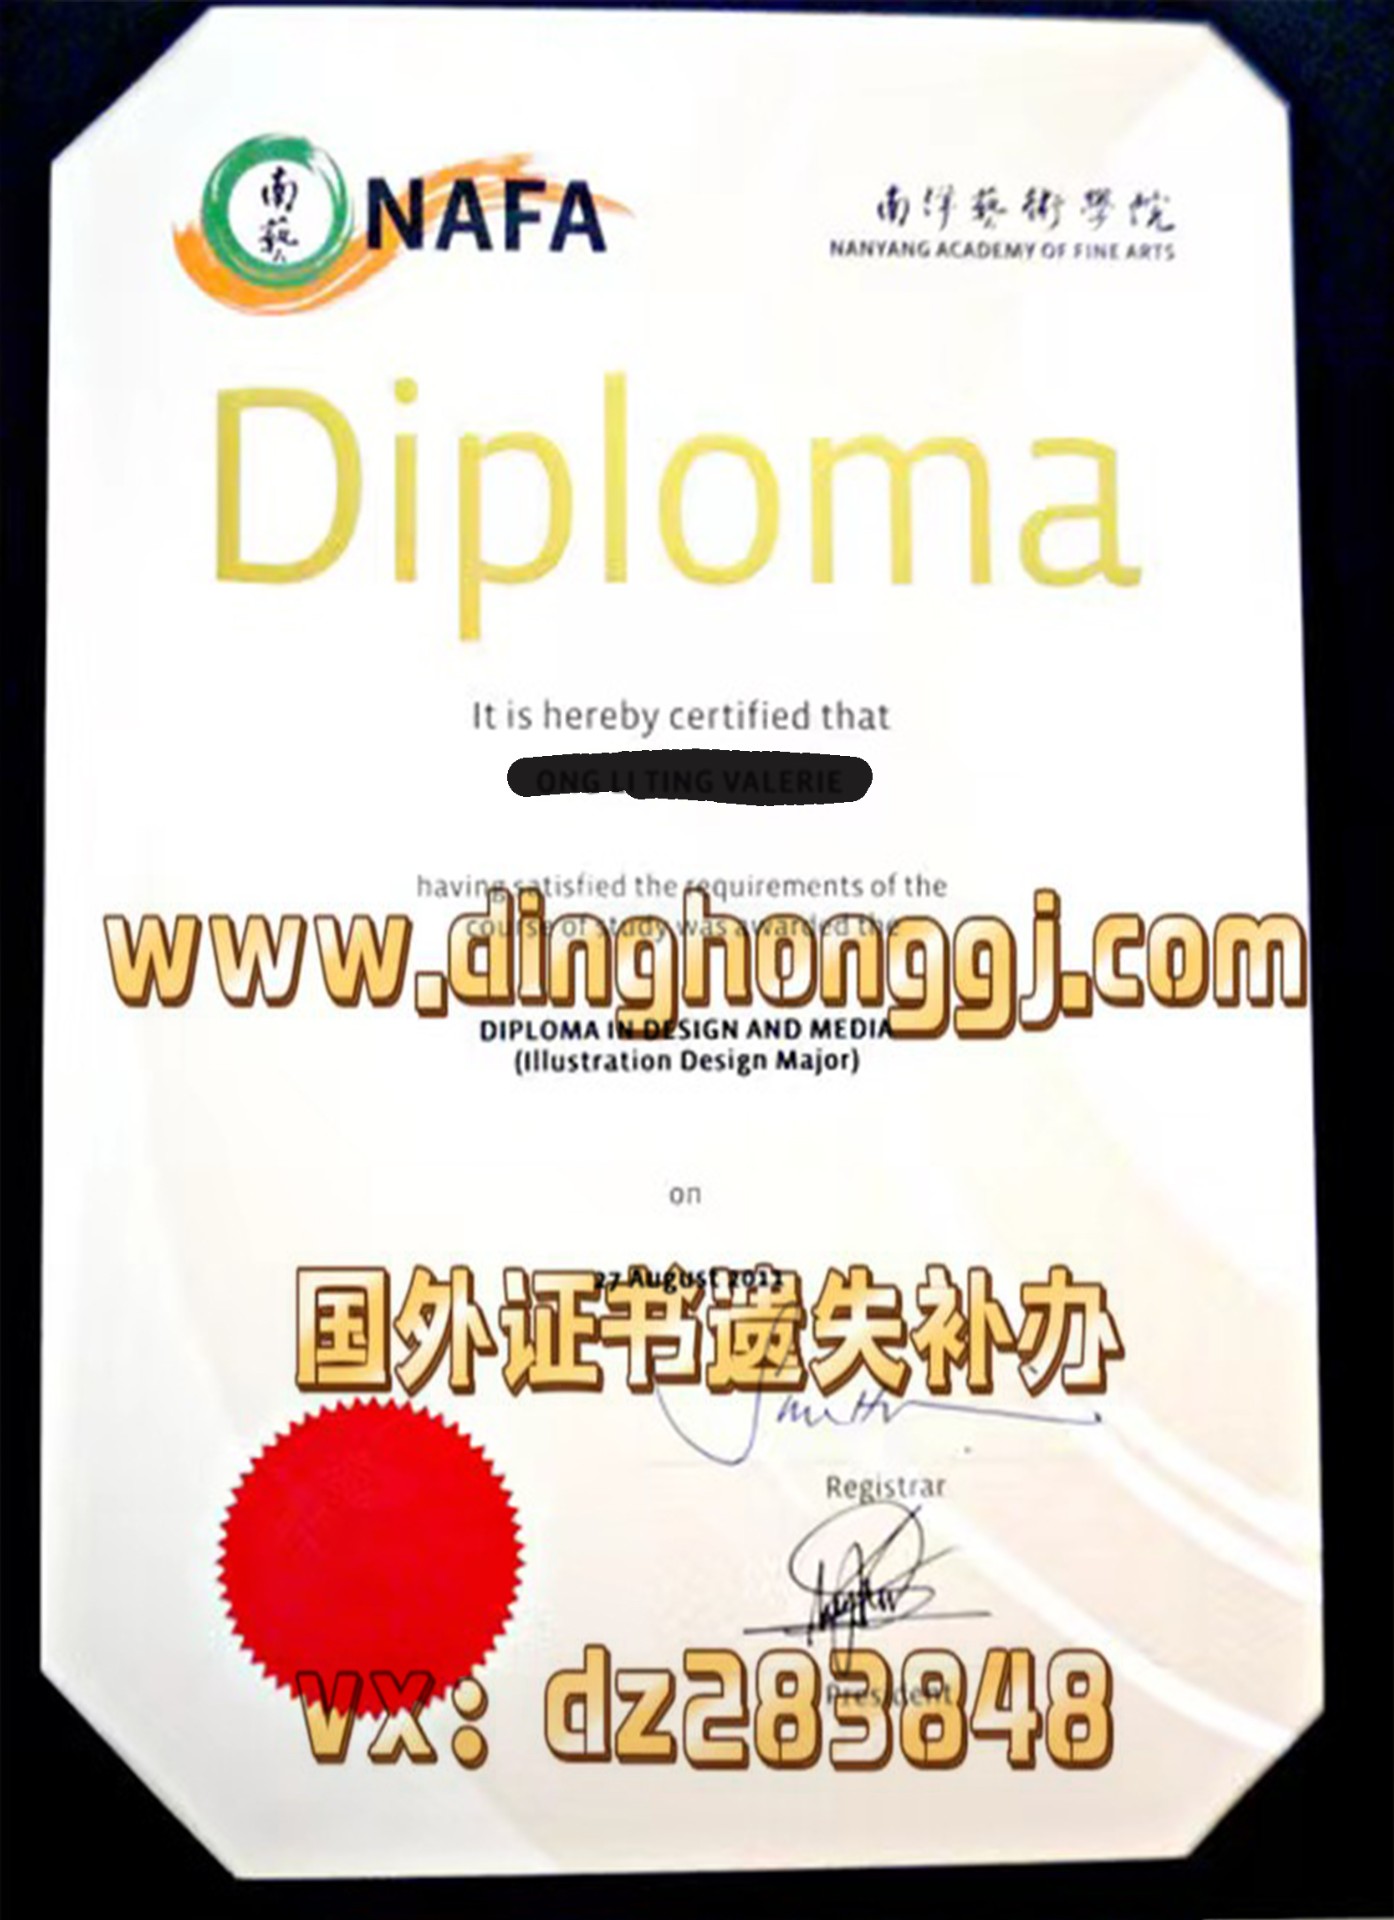 新加坡南洋艺术学院Nanyang Academy of Fine ArtsDiploma Degree Transcript 、本科、硕士、博士、成绩单、学生证（学生卡）、录取通知书（offer申请学校）、认证、样本图片、diploma案例原版